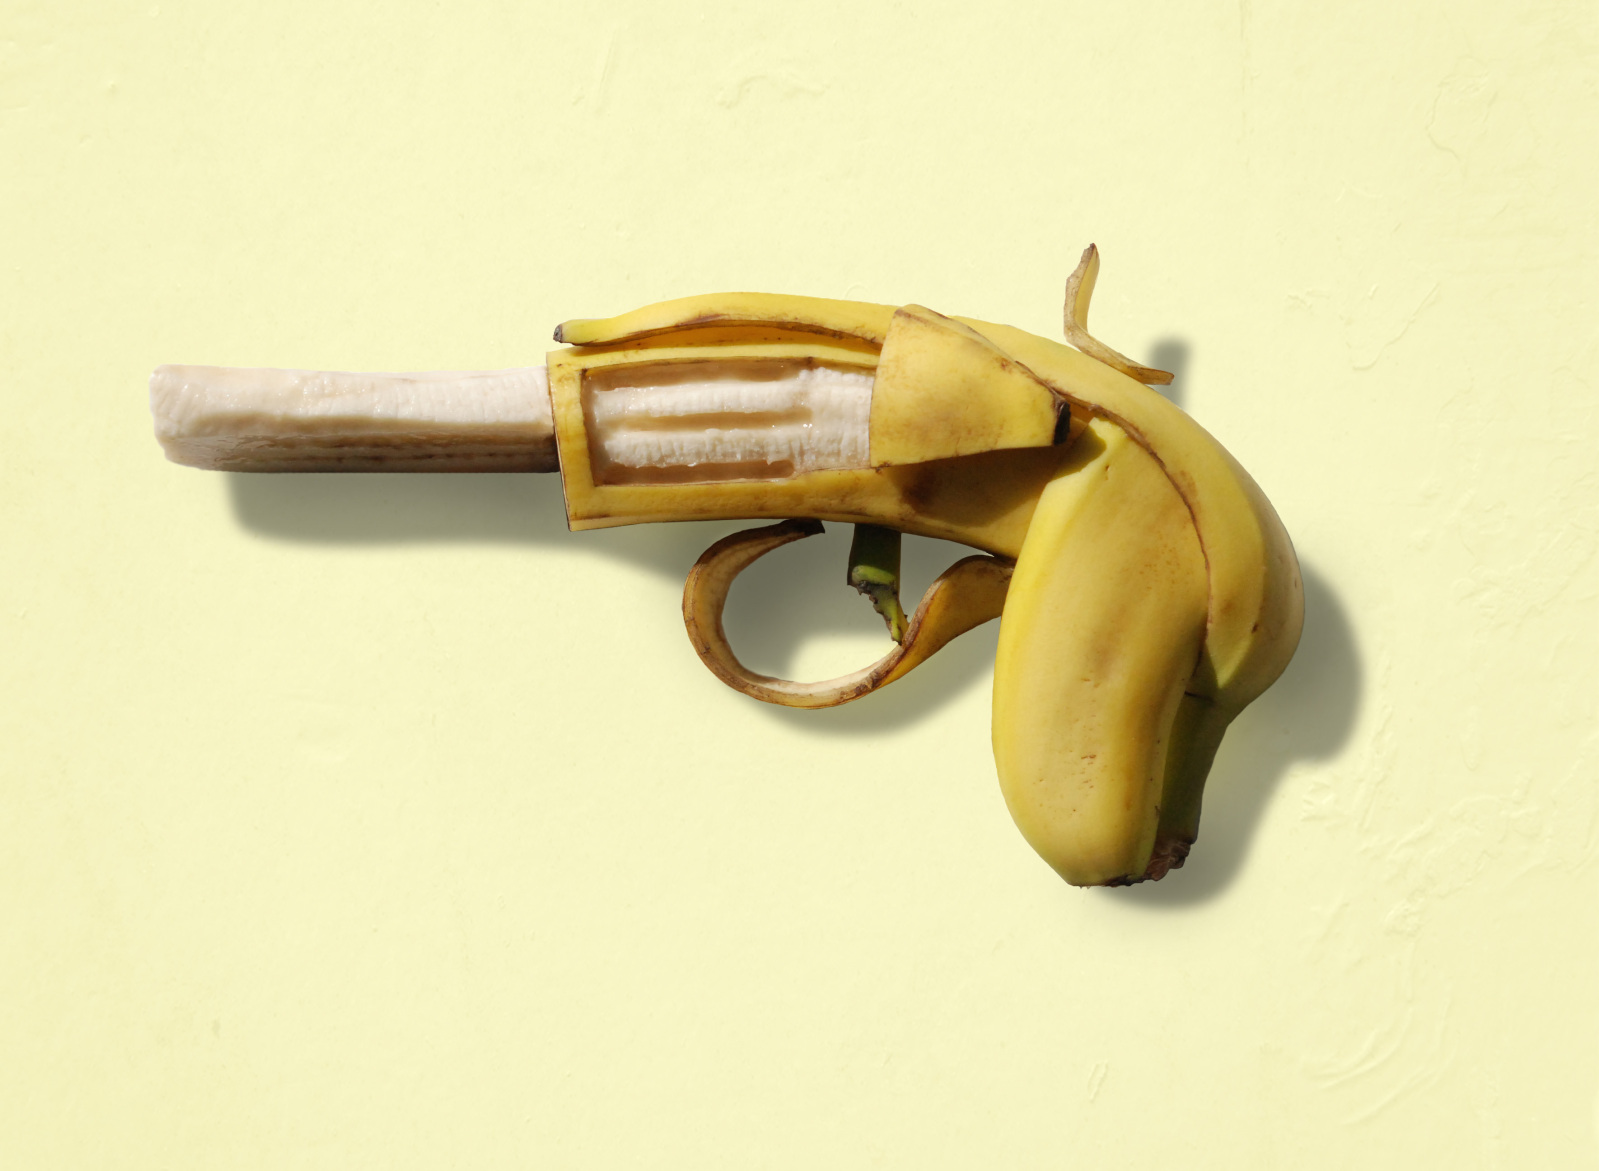 Banana gun